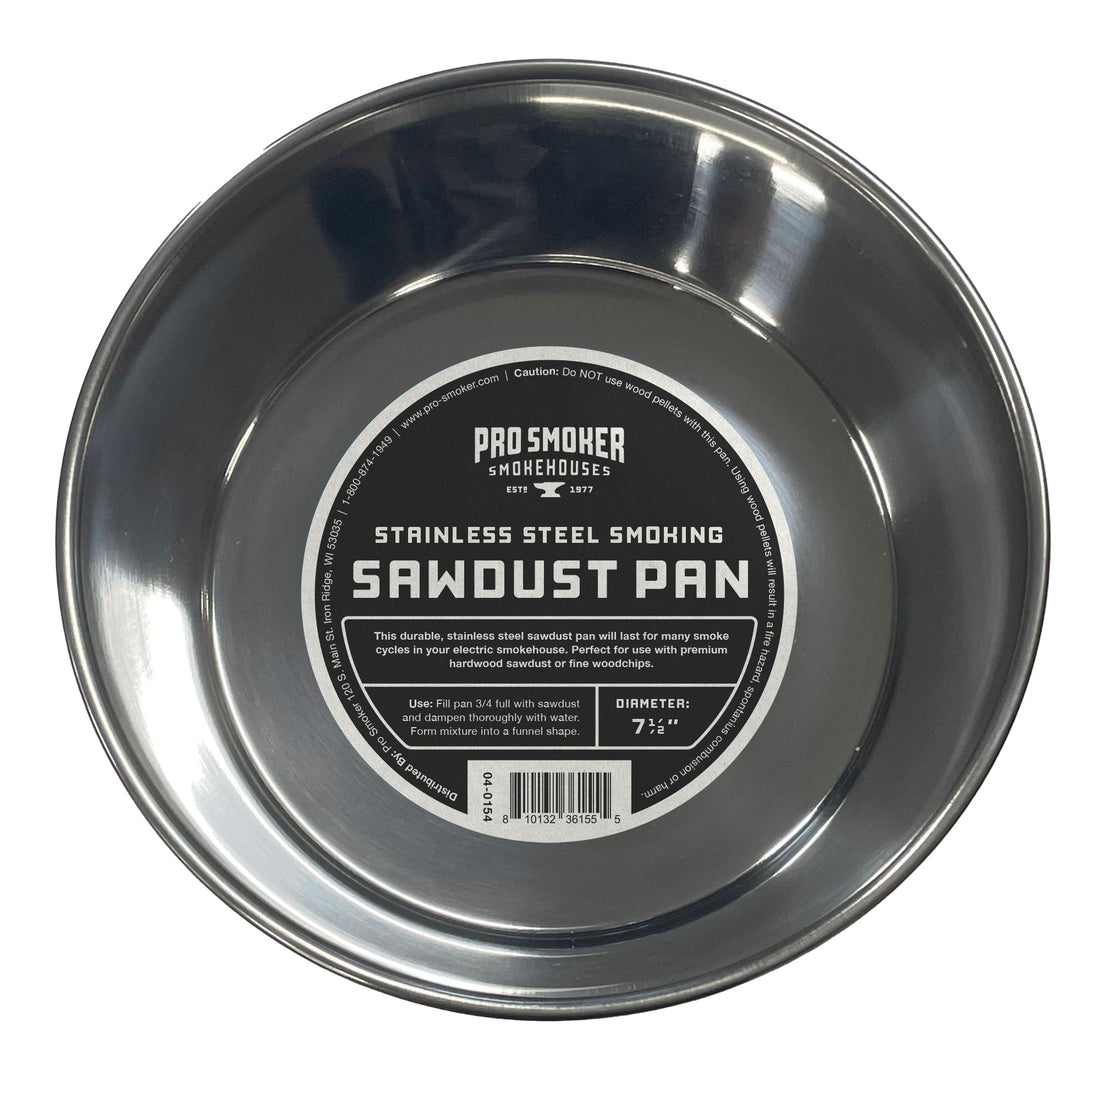 Stainless Steel Sawdust Pan